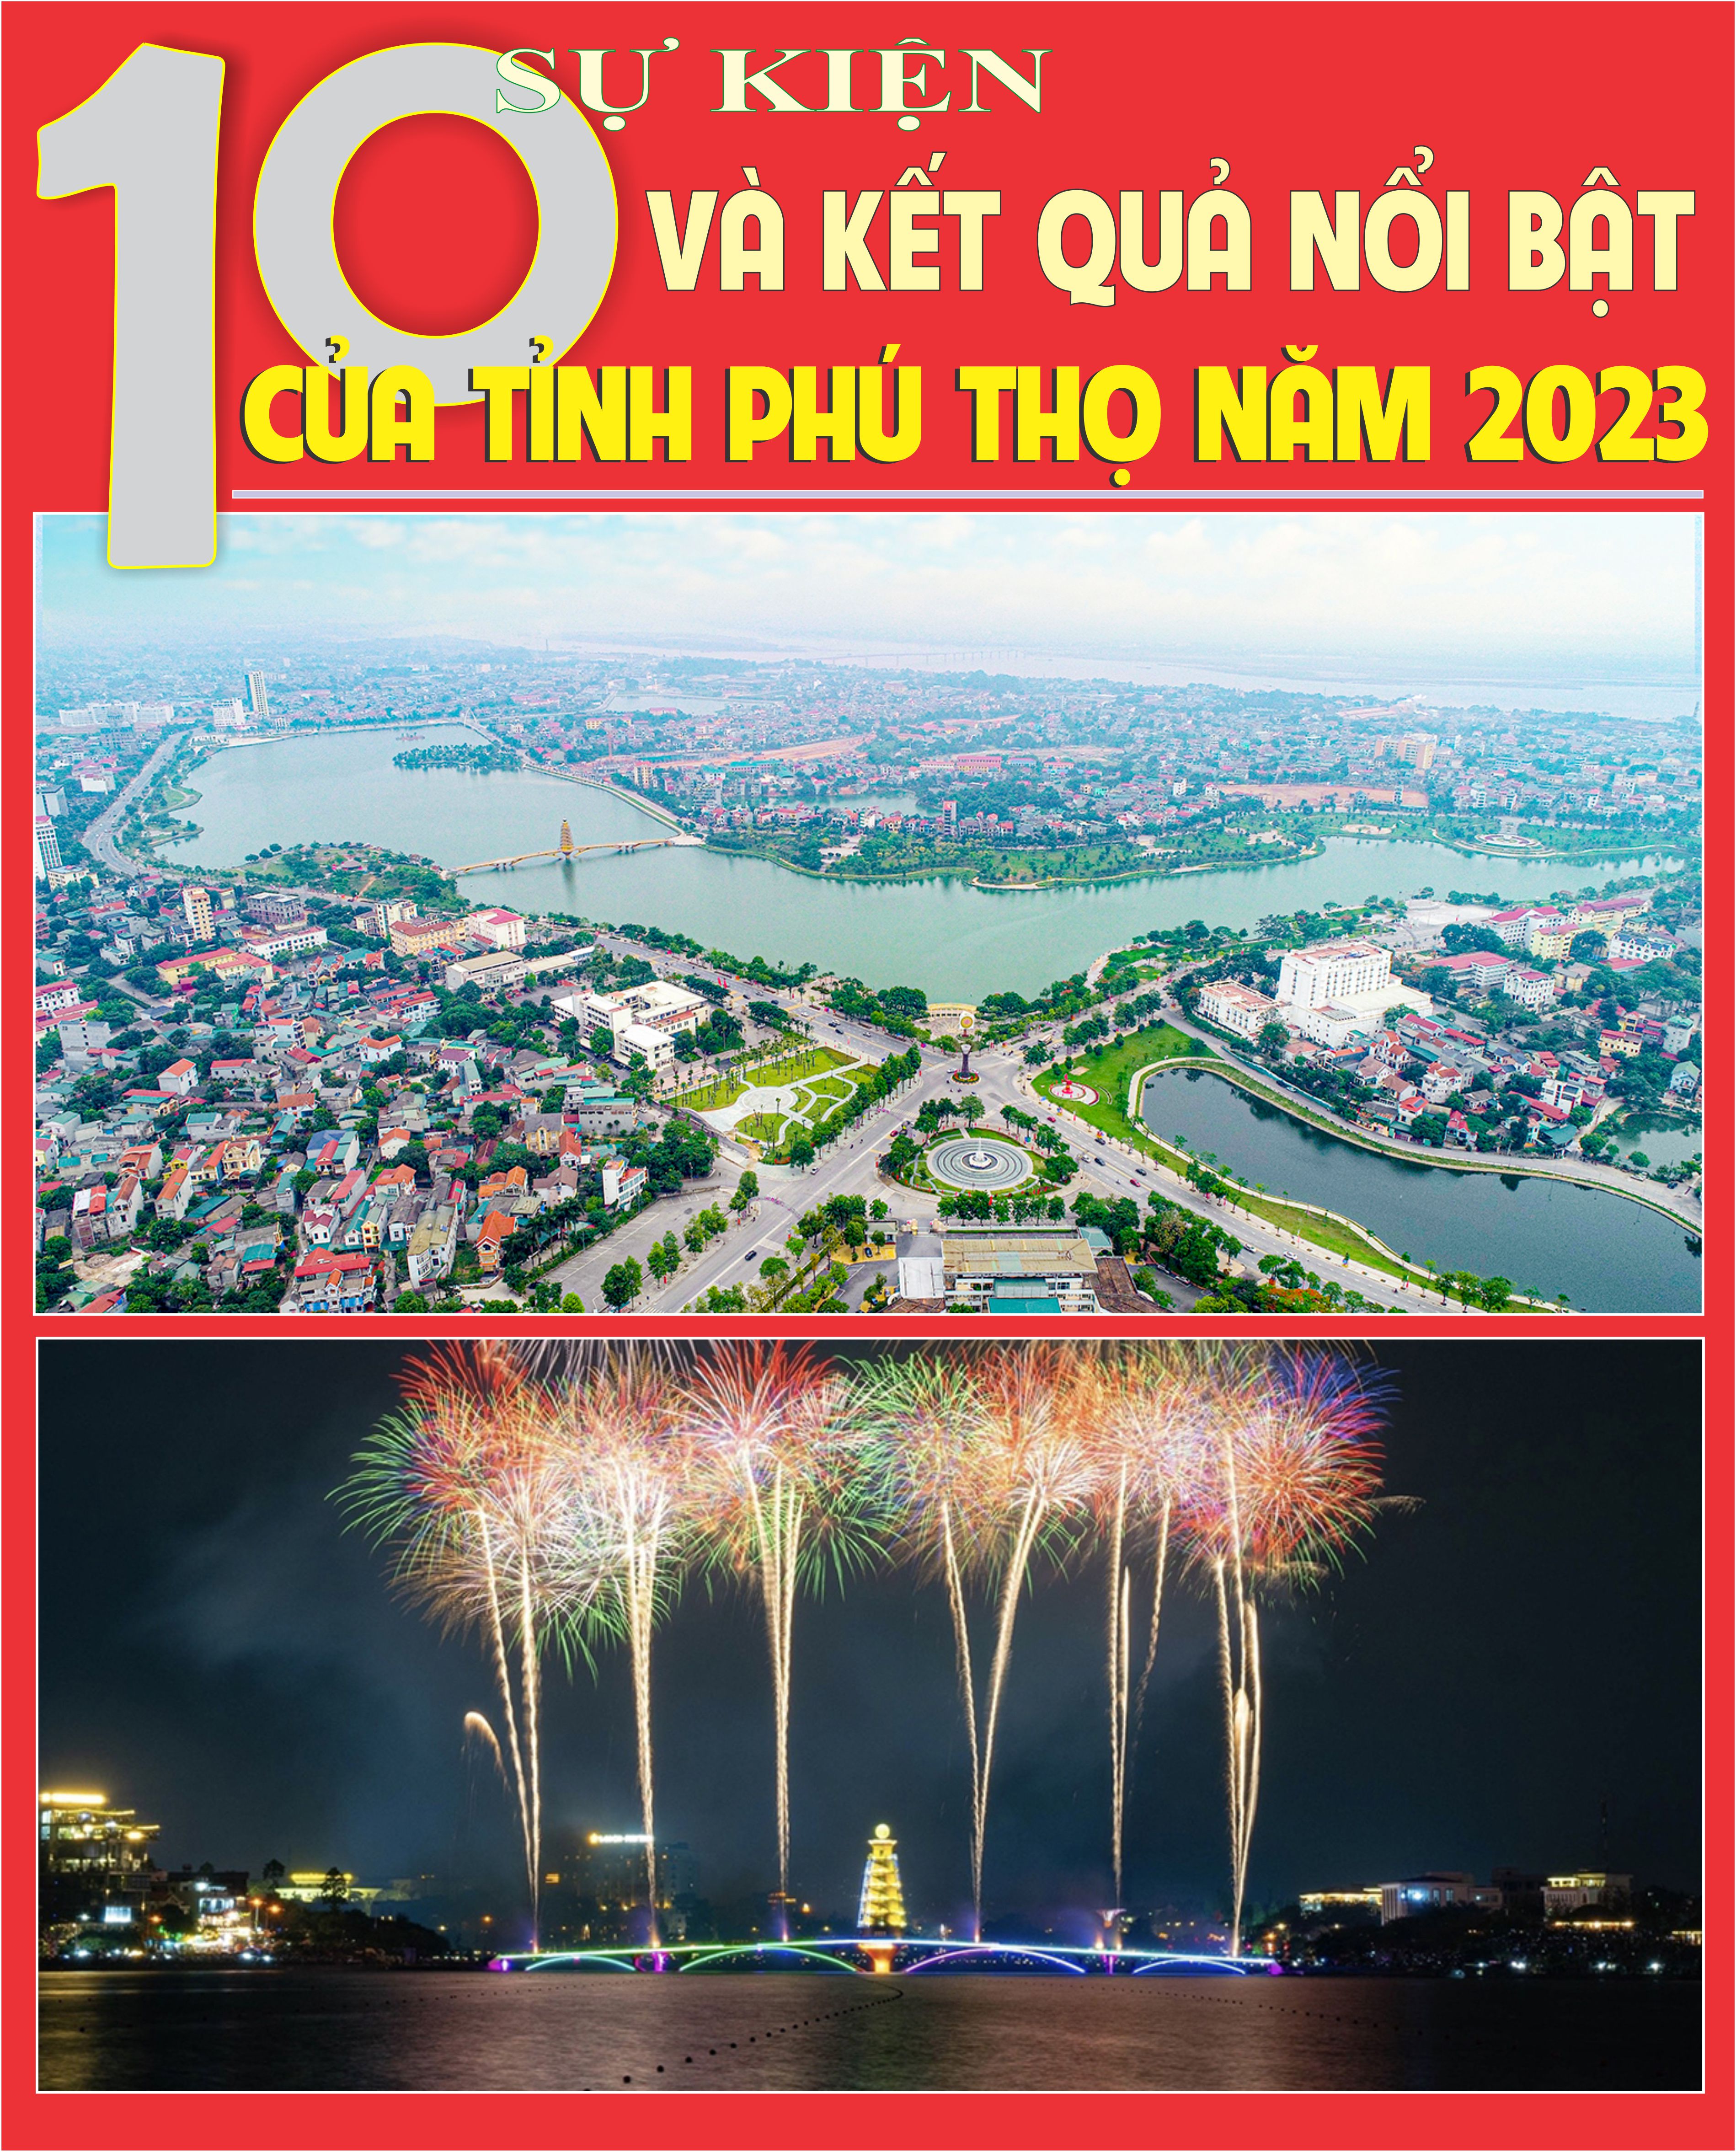 10 sự kiện và kết quả nổi bật của tỉnh Phú Thọ năm 2023